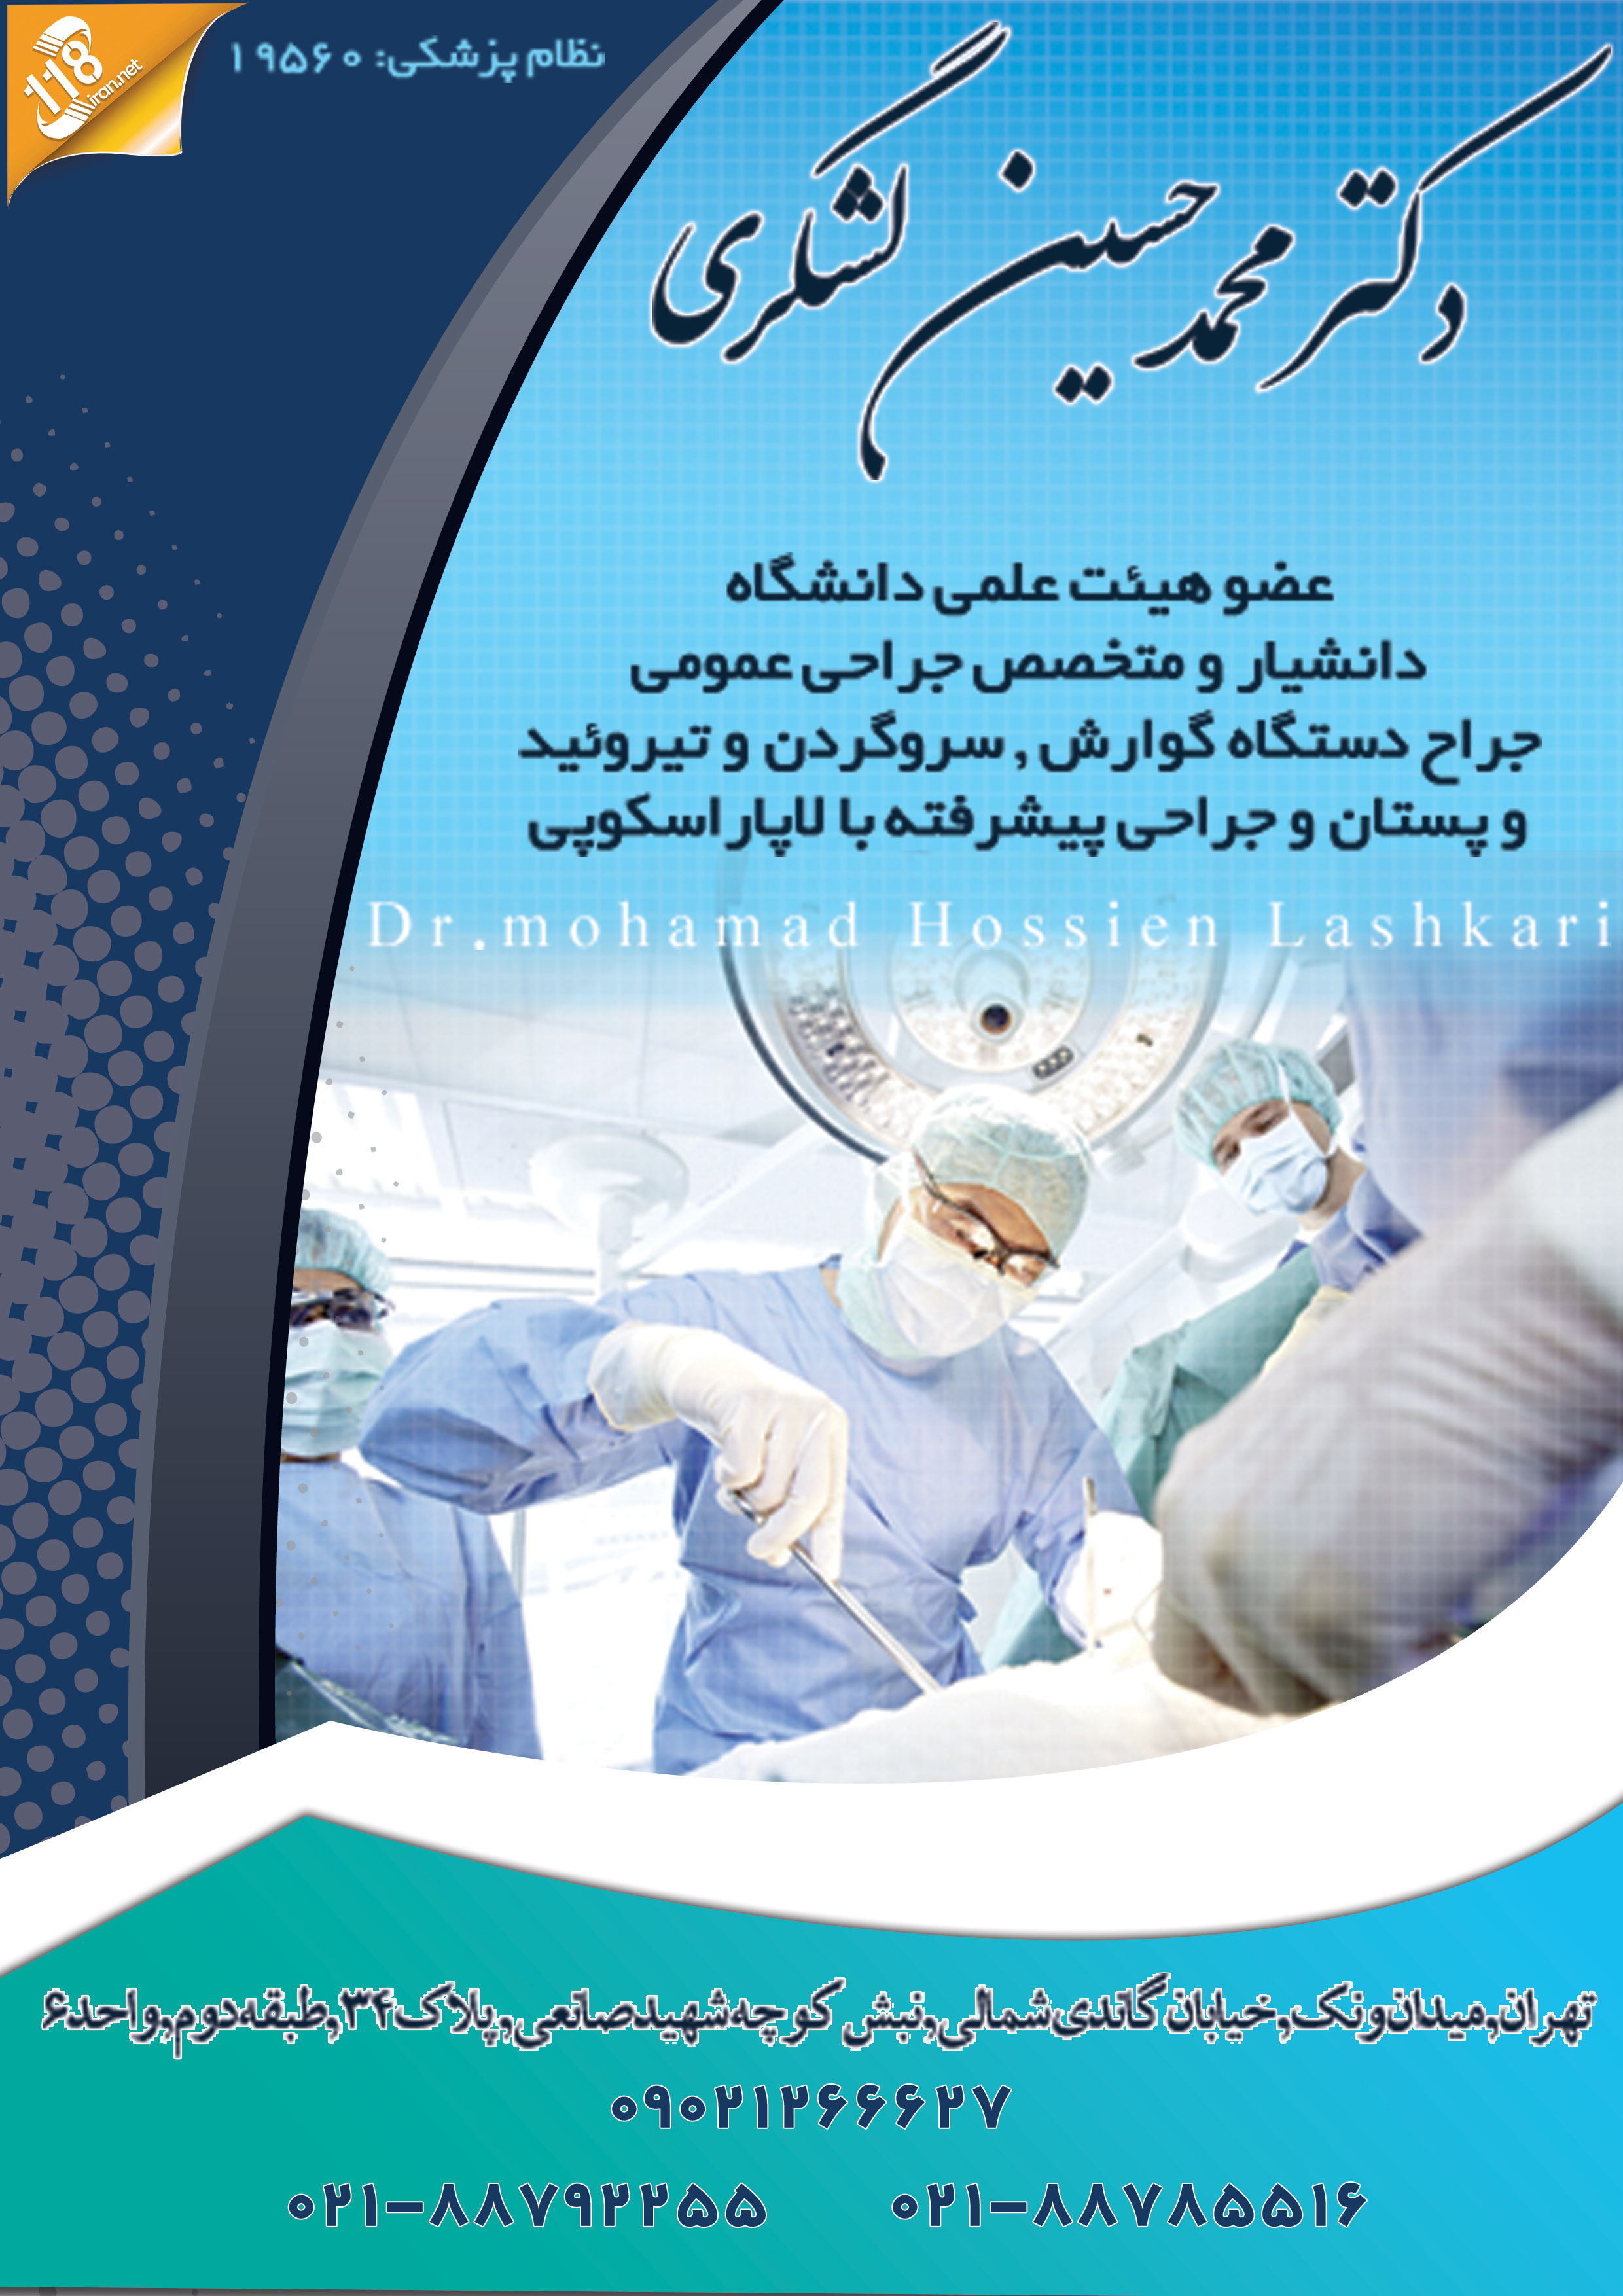 دکتر محمد حسین لشگری